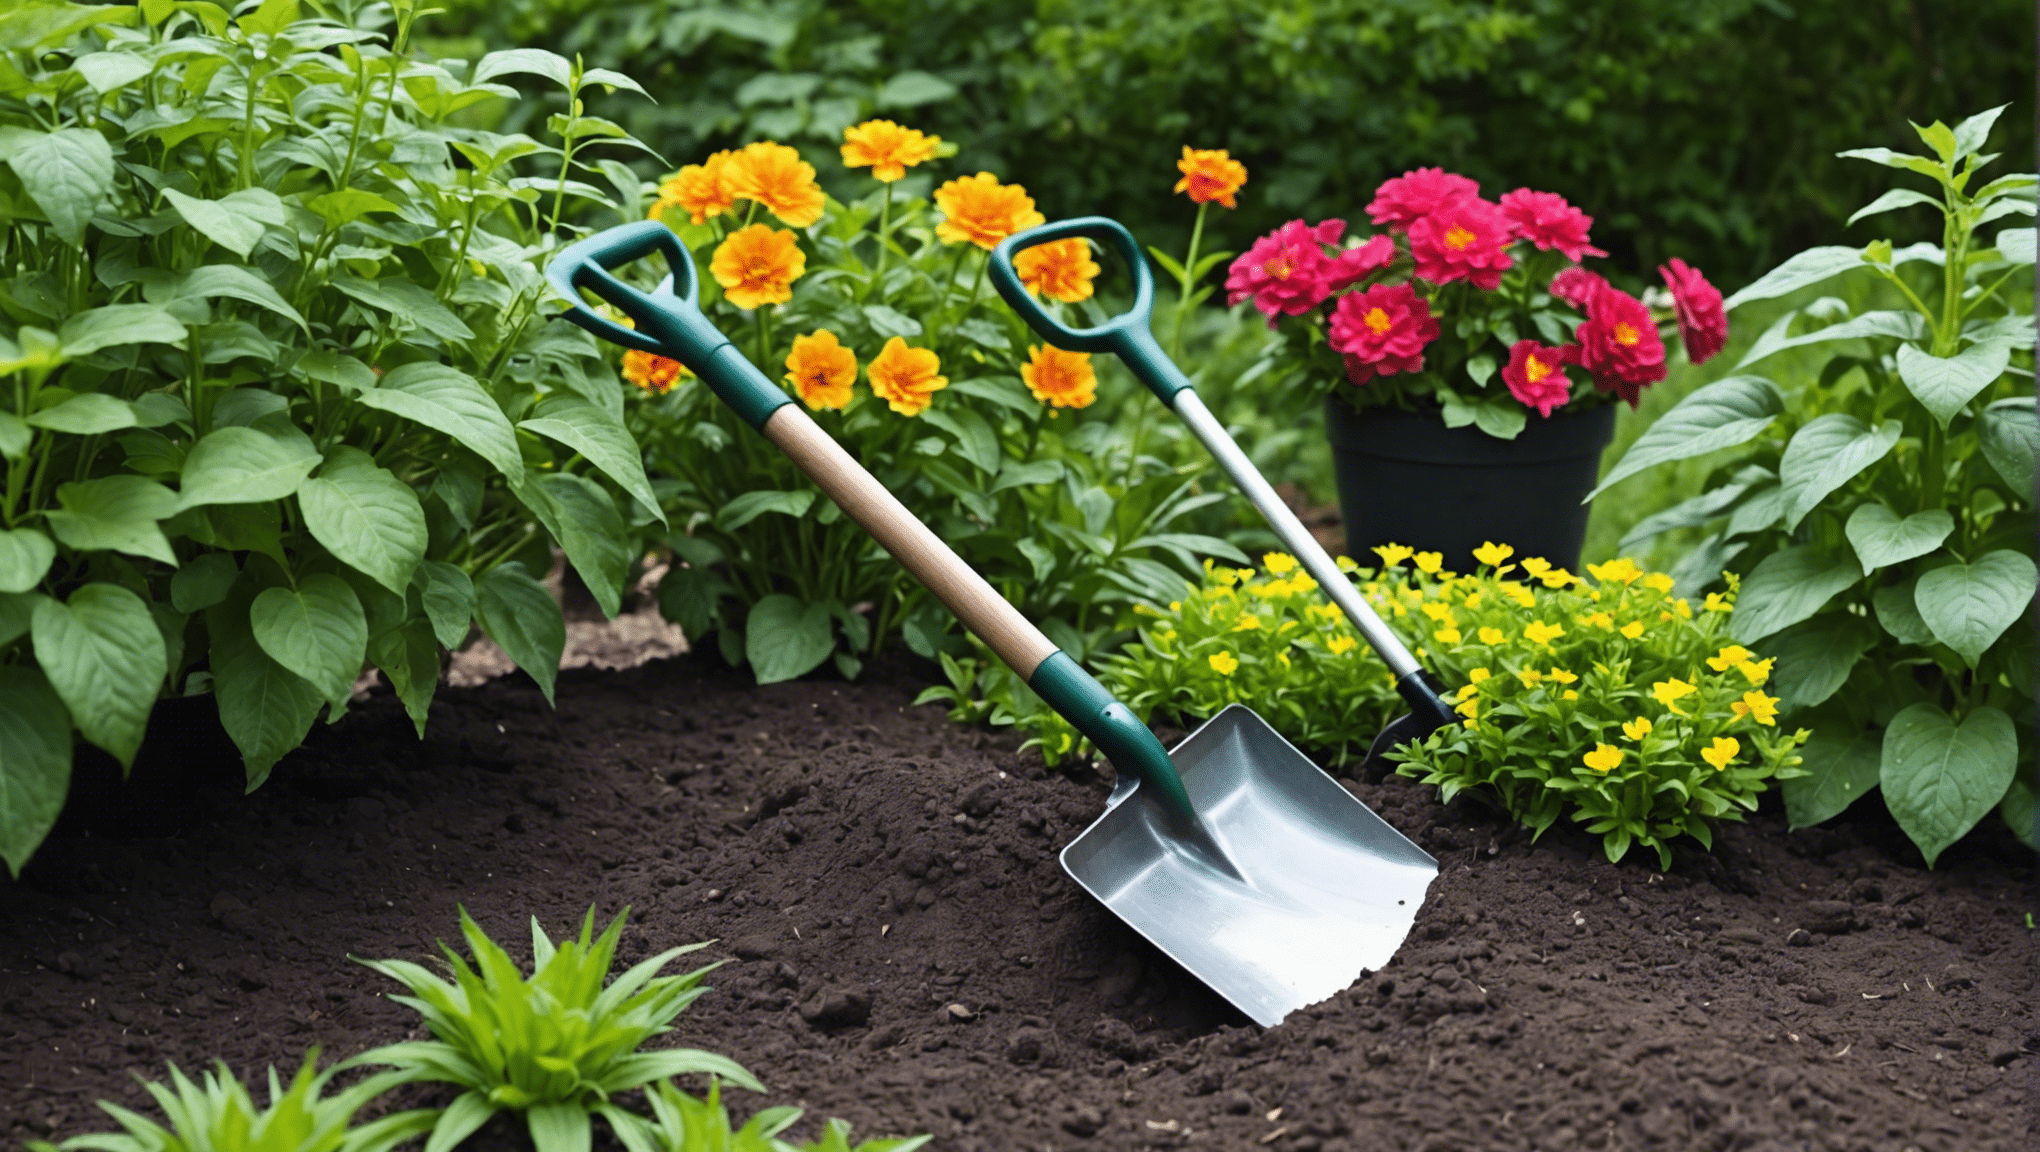 encuentre la pala de jardín pequeña ideal para todas sus necesidades de jardinería con nuestra selección de herramientas duraderas y de alta calidad.